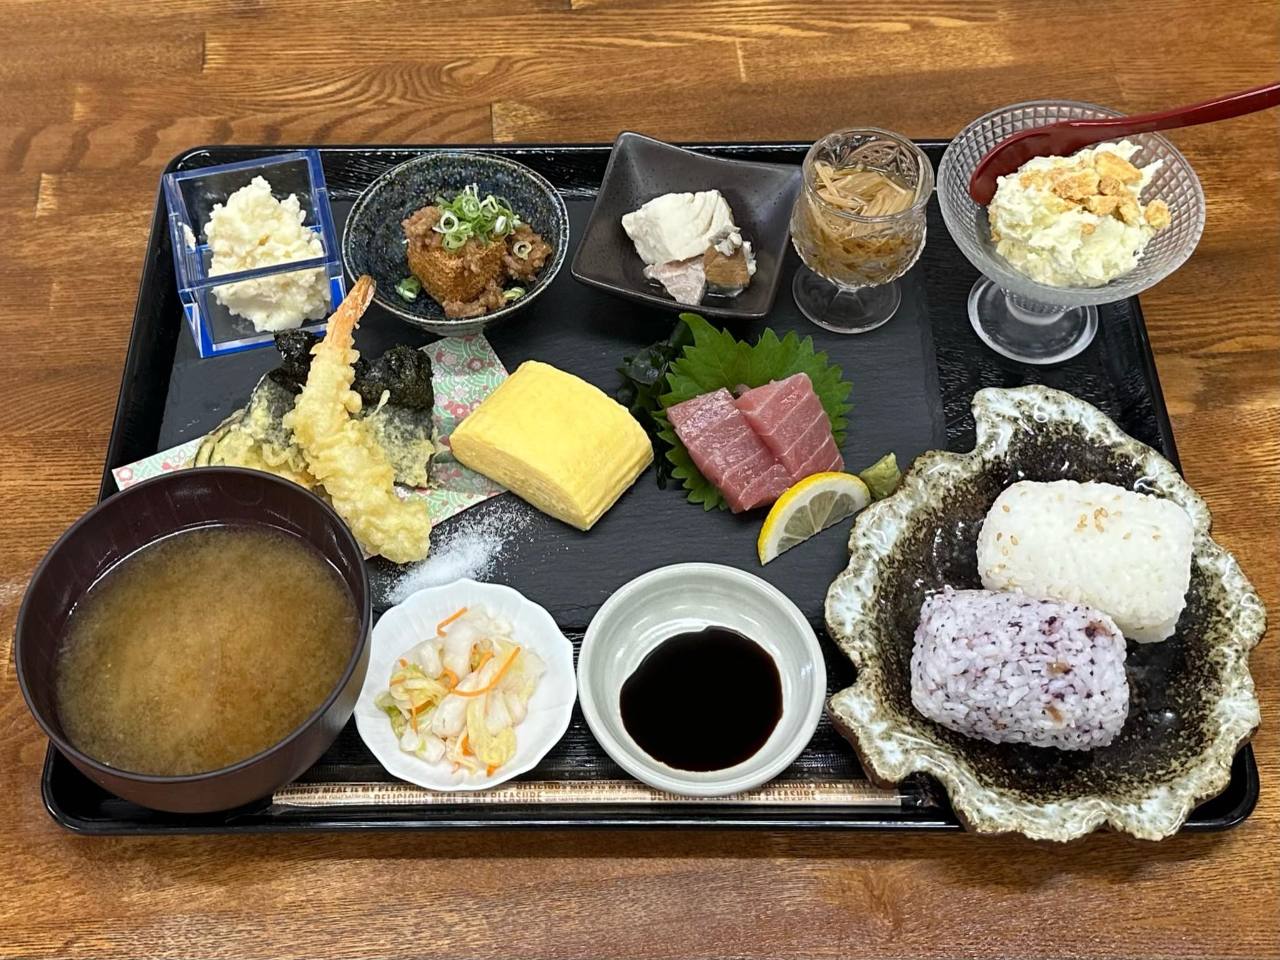 ☆おばんざいセット☆
天麩羅、お刺身にお惣菜五種の贅沢ランチ